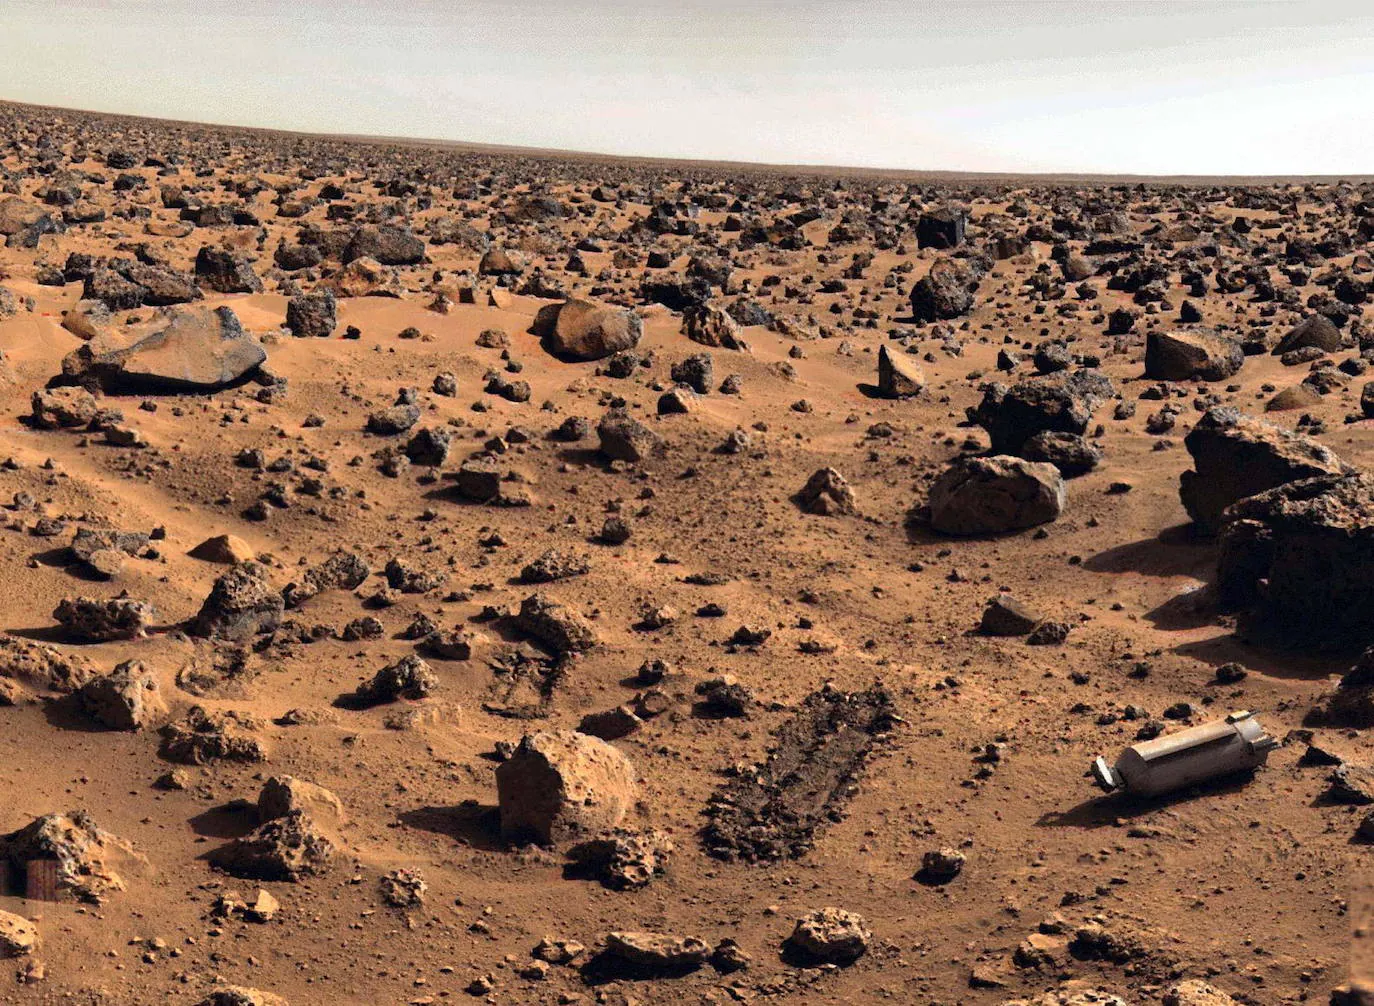 Imagen tomada en 1976 por la nave Viking II de la superficie de Marte.